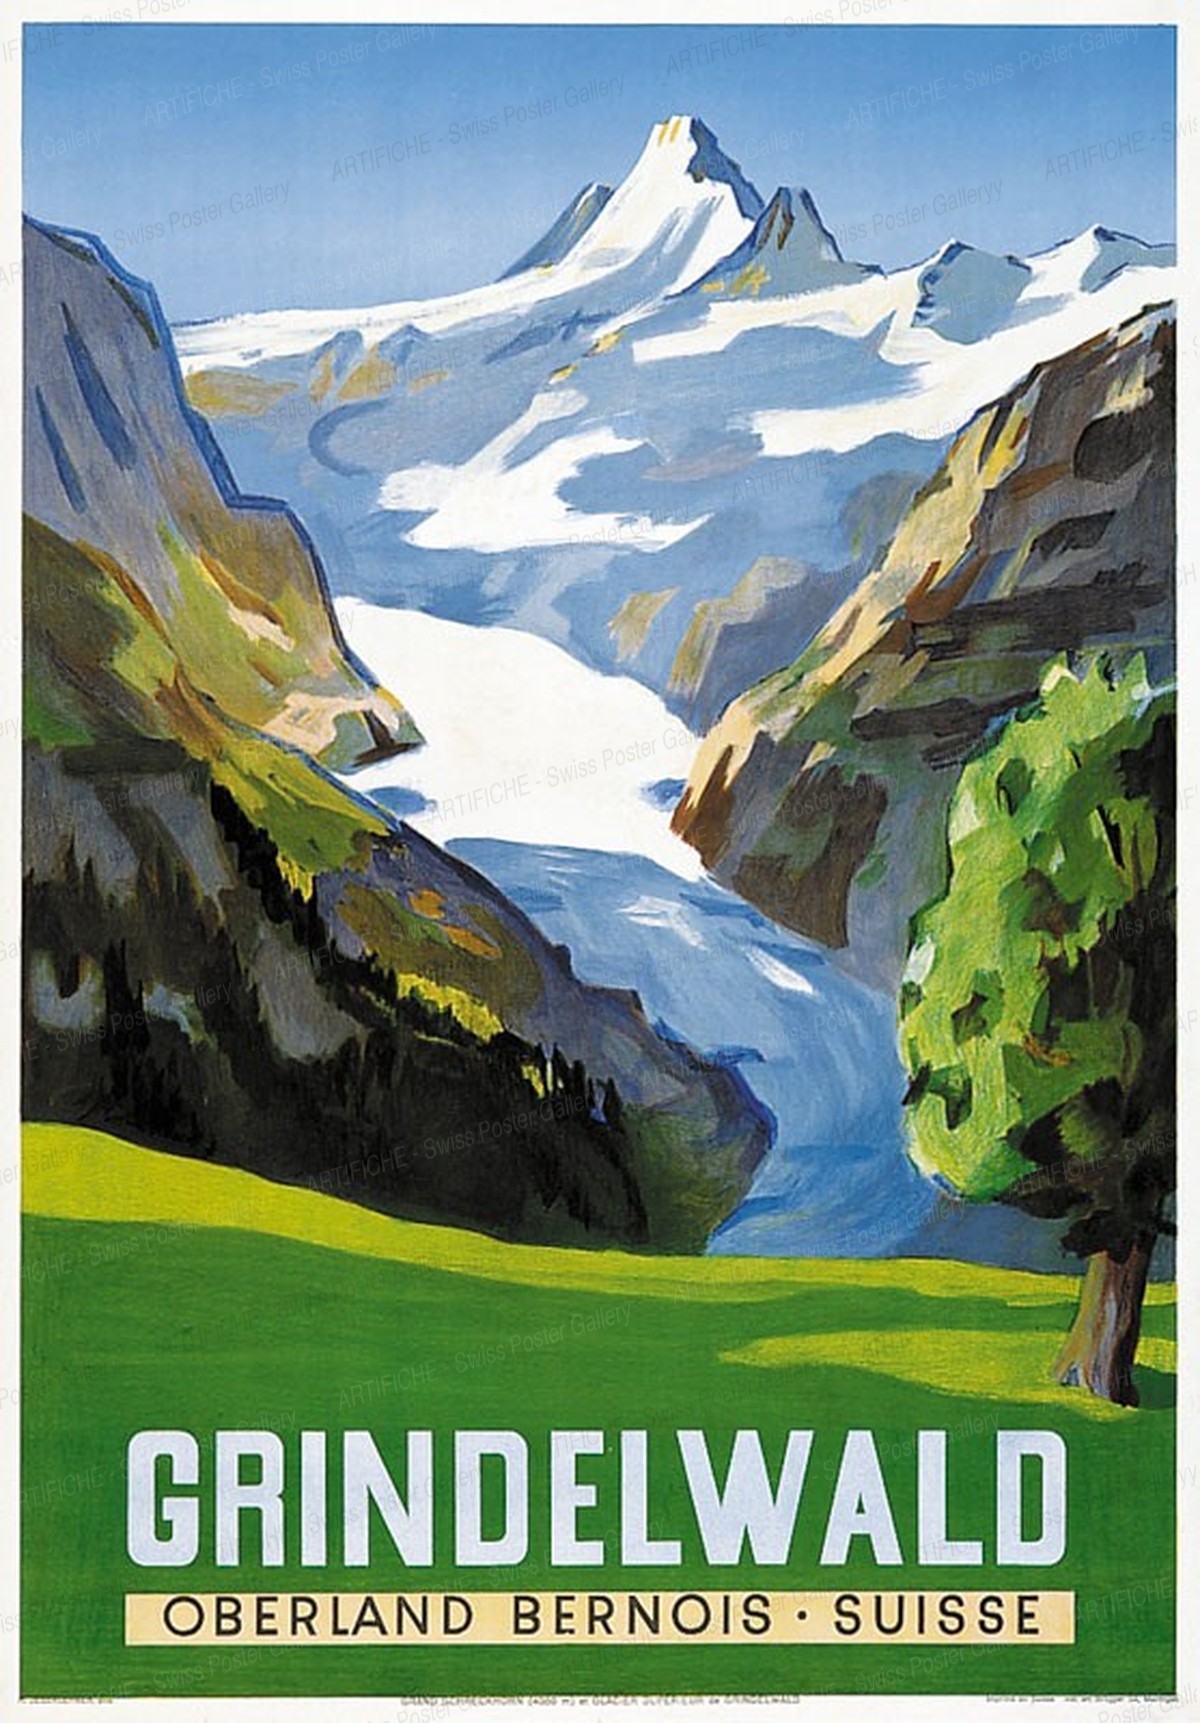 GRINDELWALD OBERLAND BERNOIS – SUISSE, Hans Jegerlehner